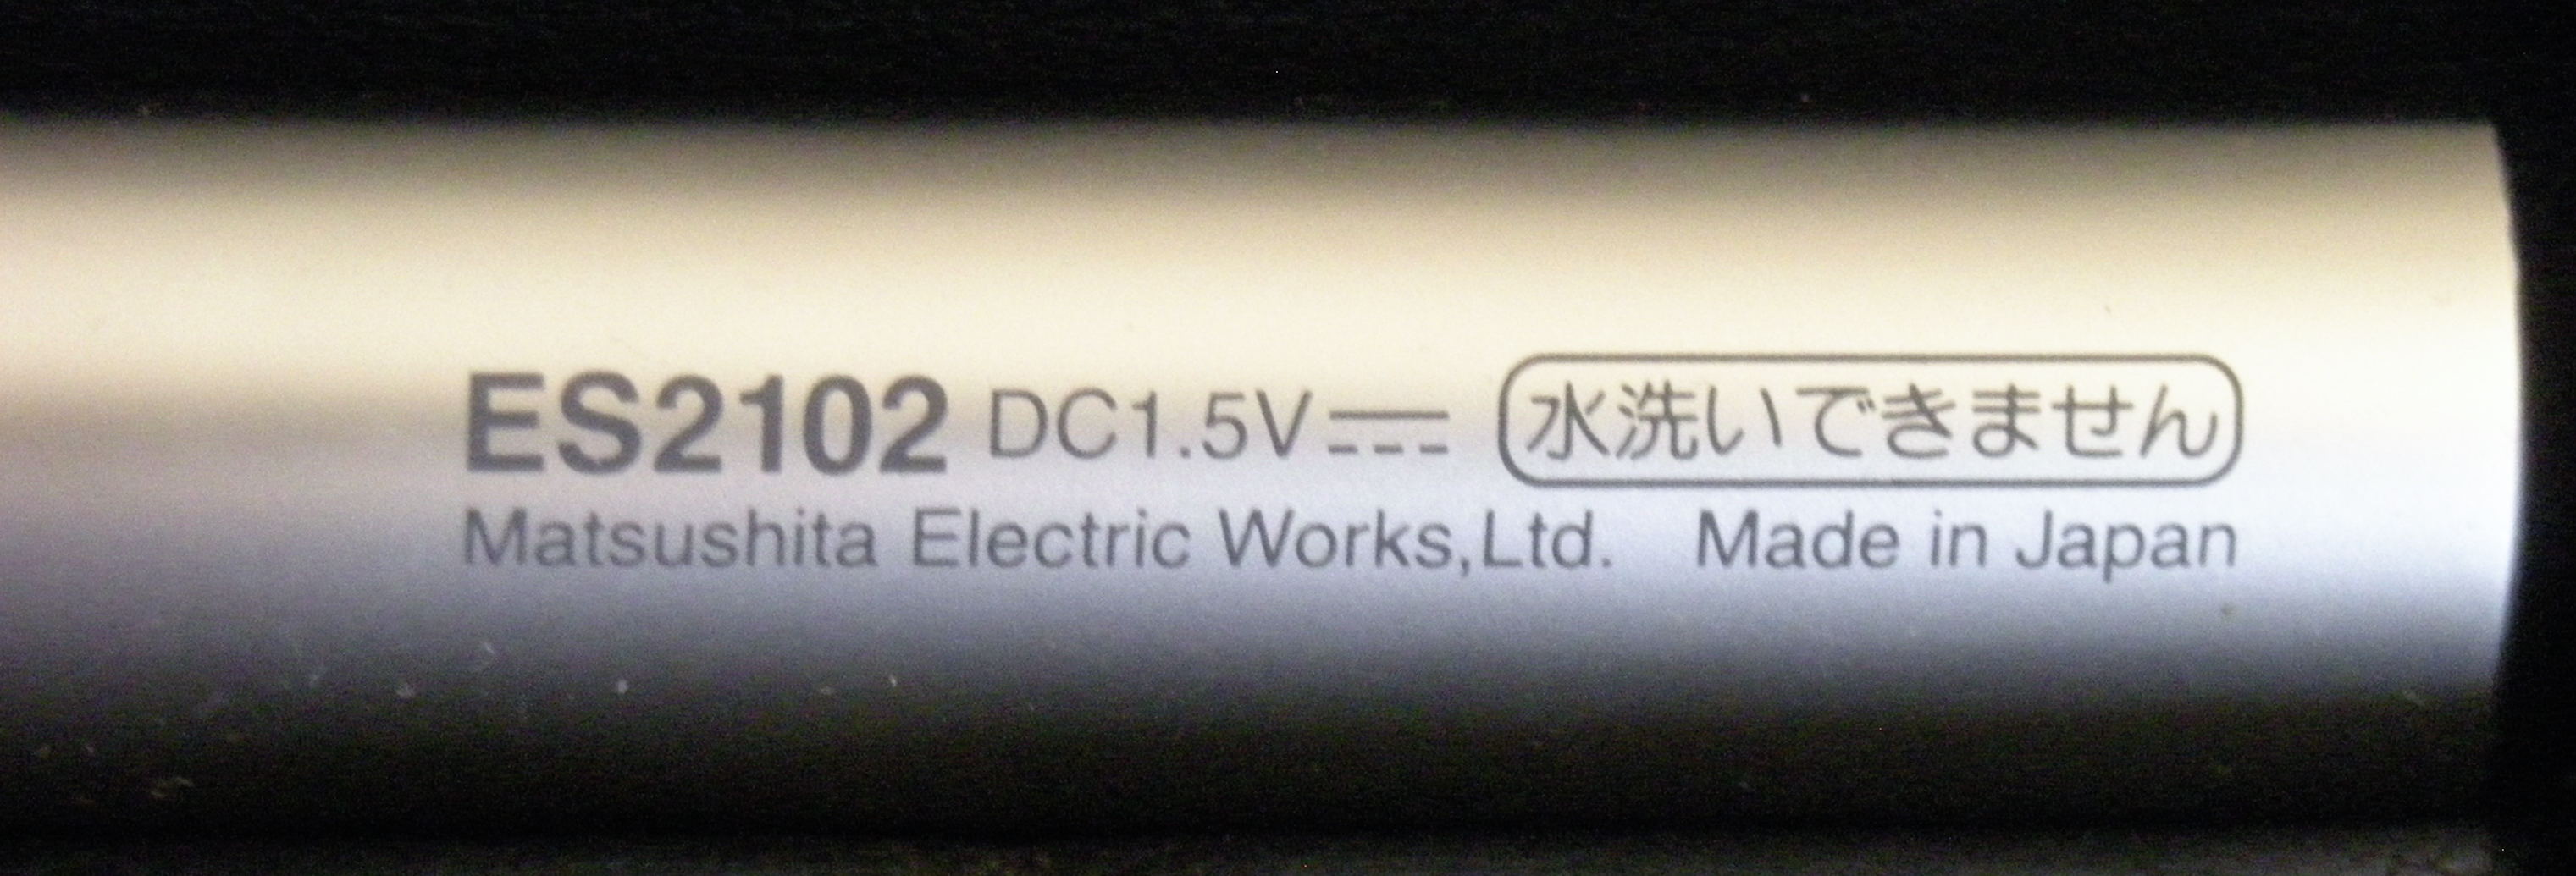 DSCN0213.JPG